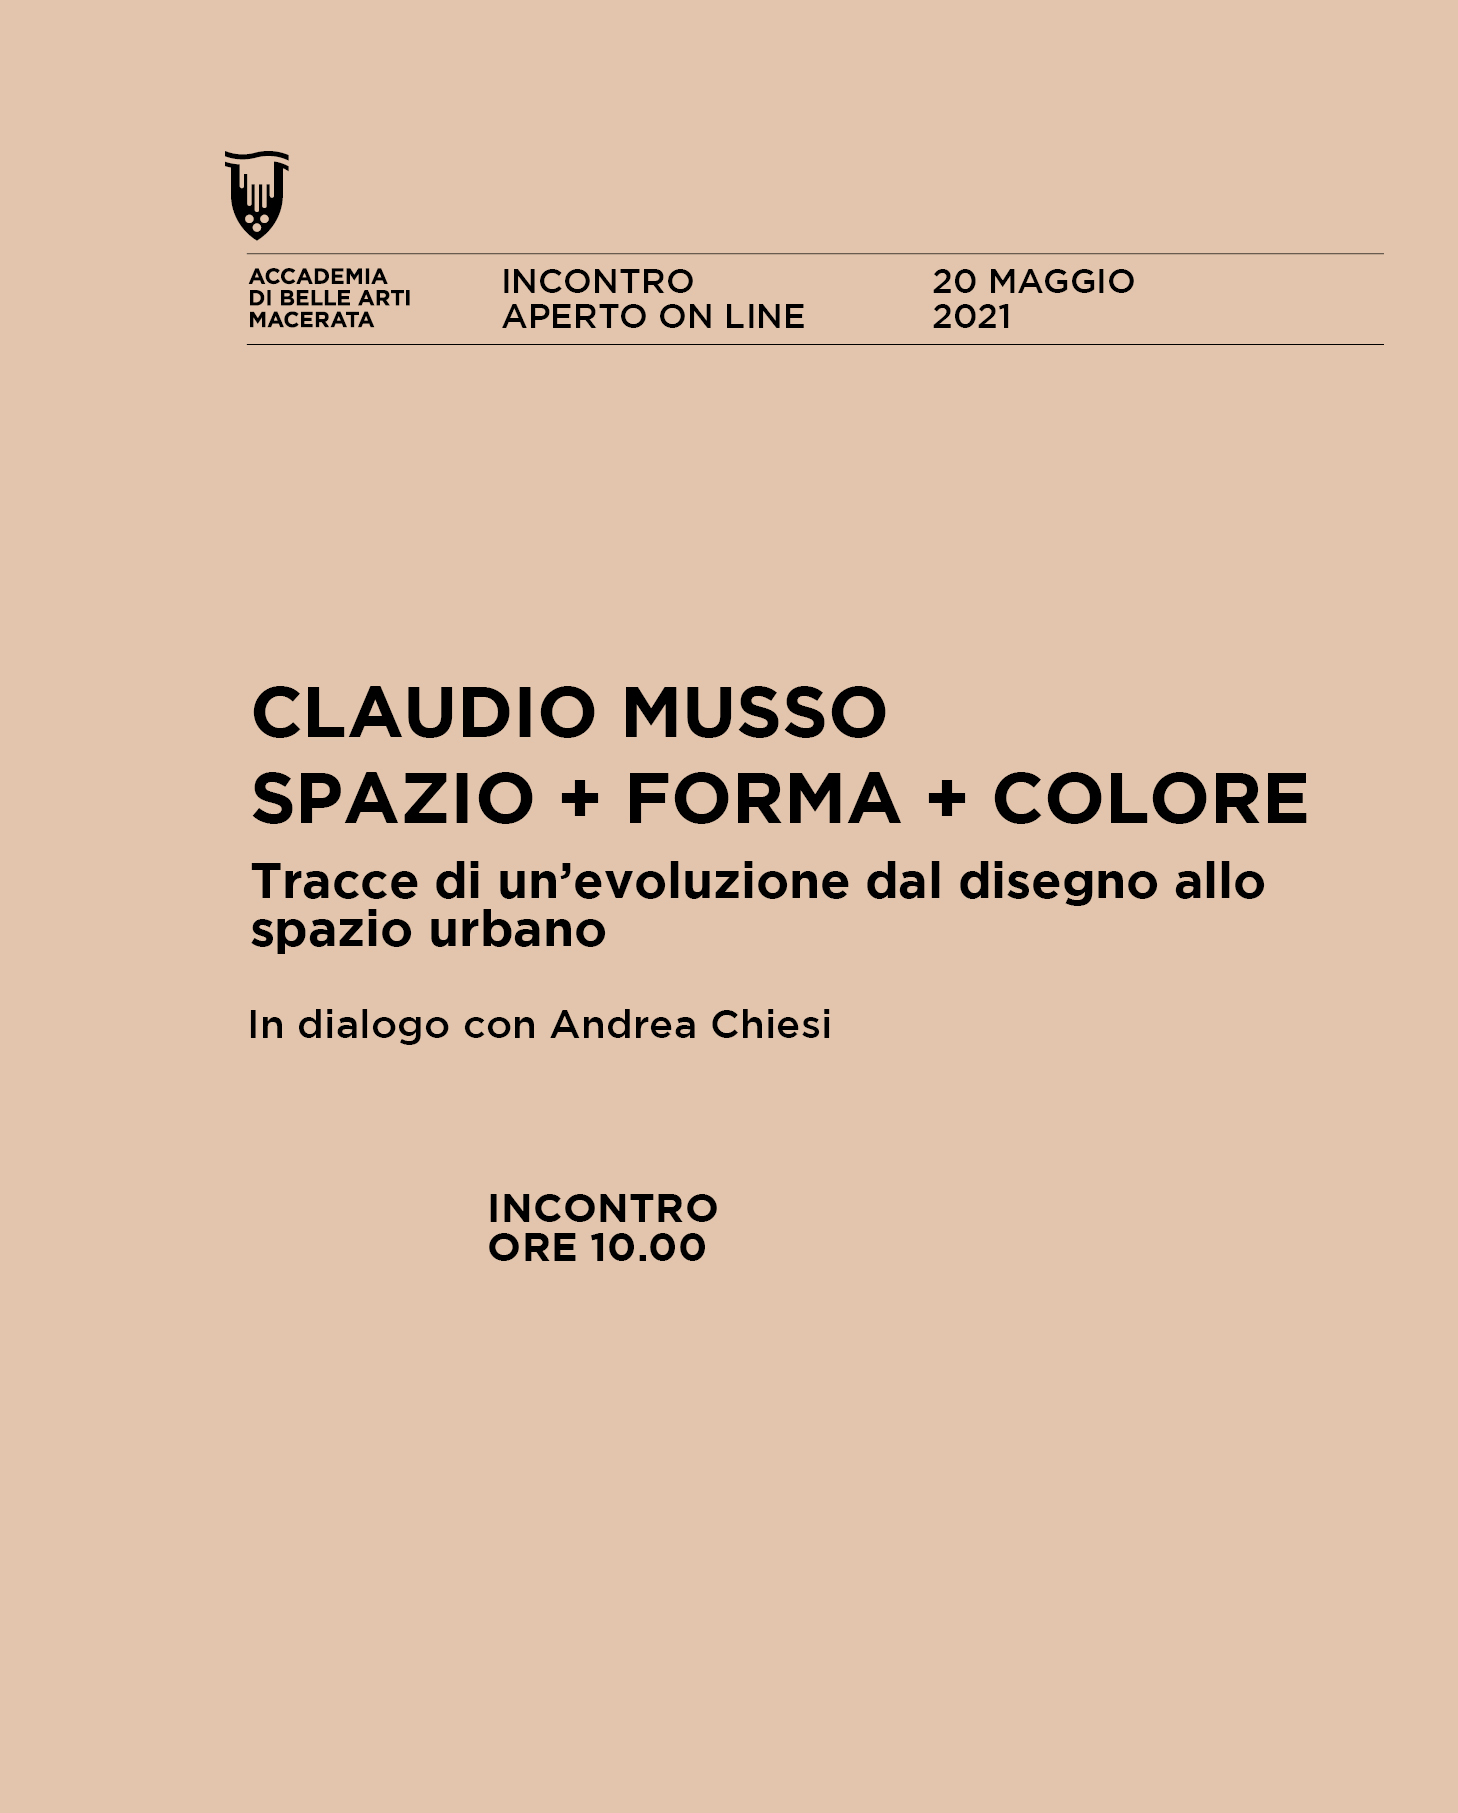 CLAUDIO MUSSO. SPAZIO + FORMA + COLORE Tracce di un'evoluzione dal disegno allo spazio urbano in dialogo con Andrea Chiesi 